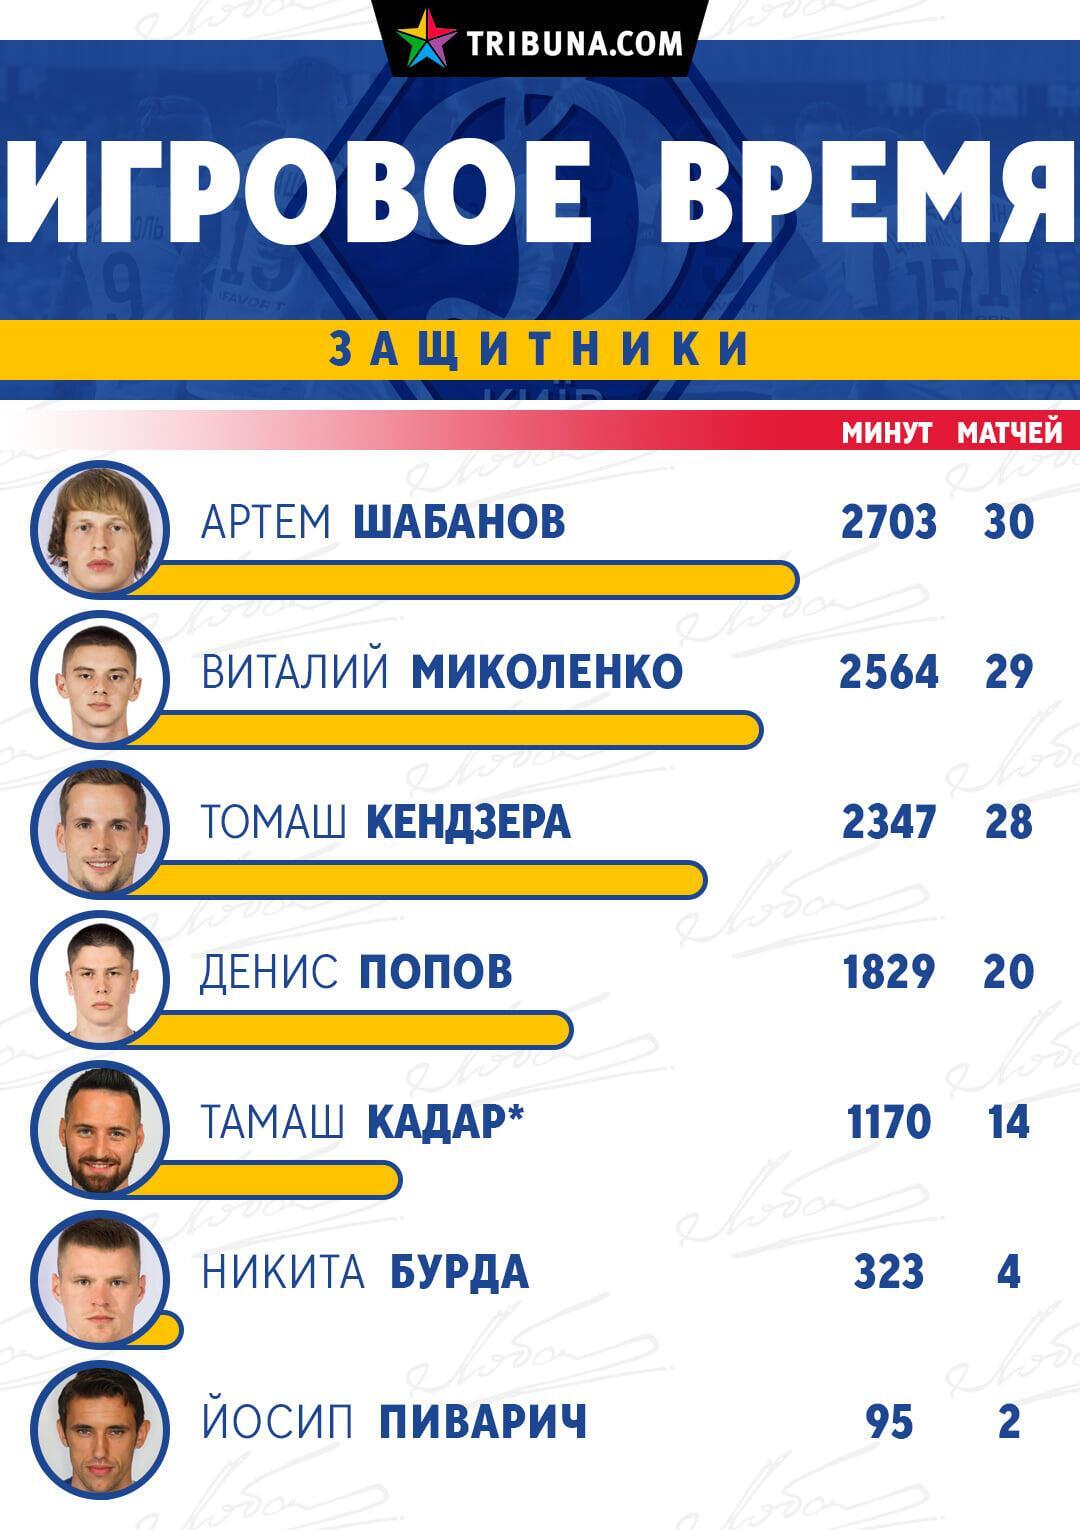 Работу Михайличенко в "Динамо" показали в цифрах